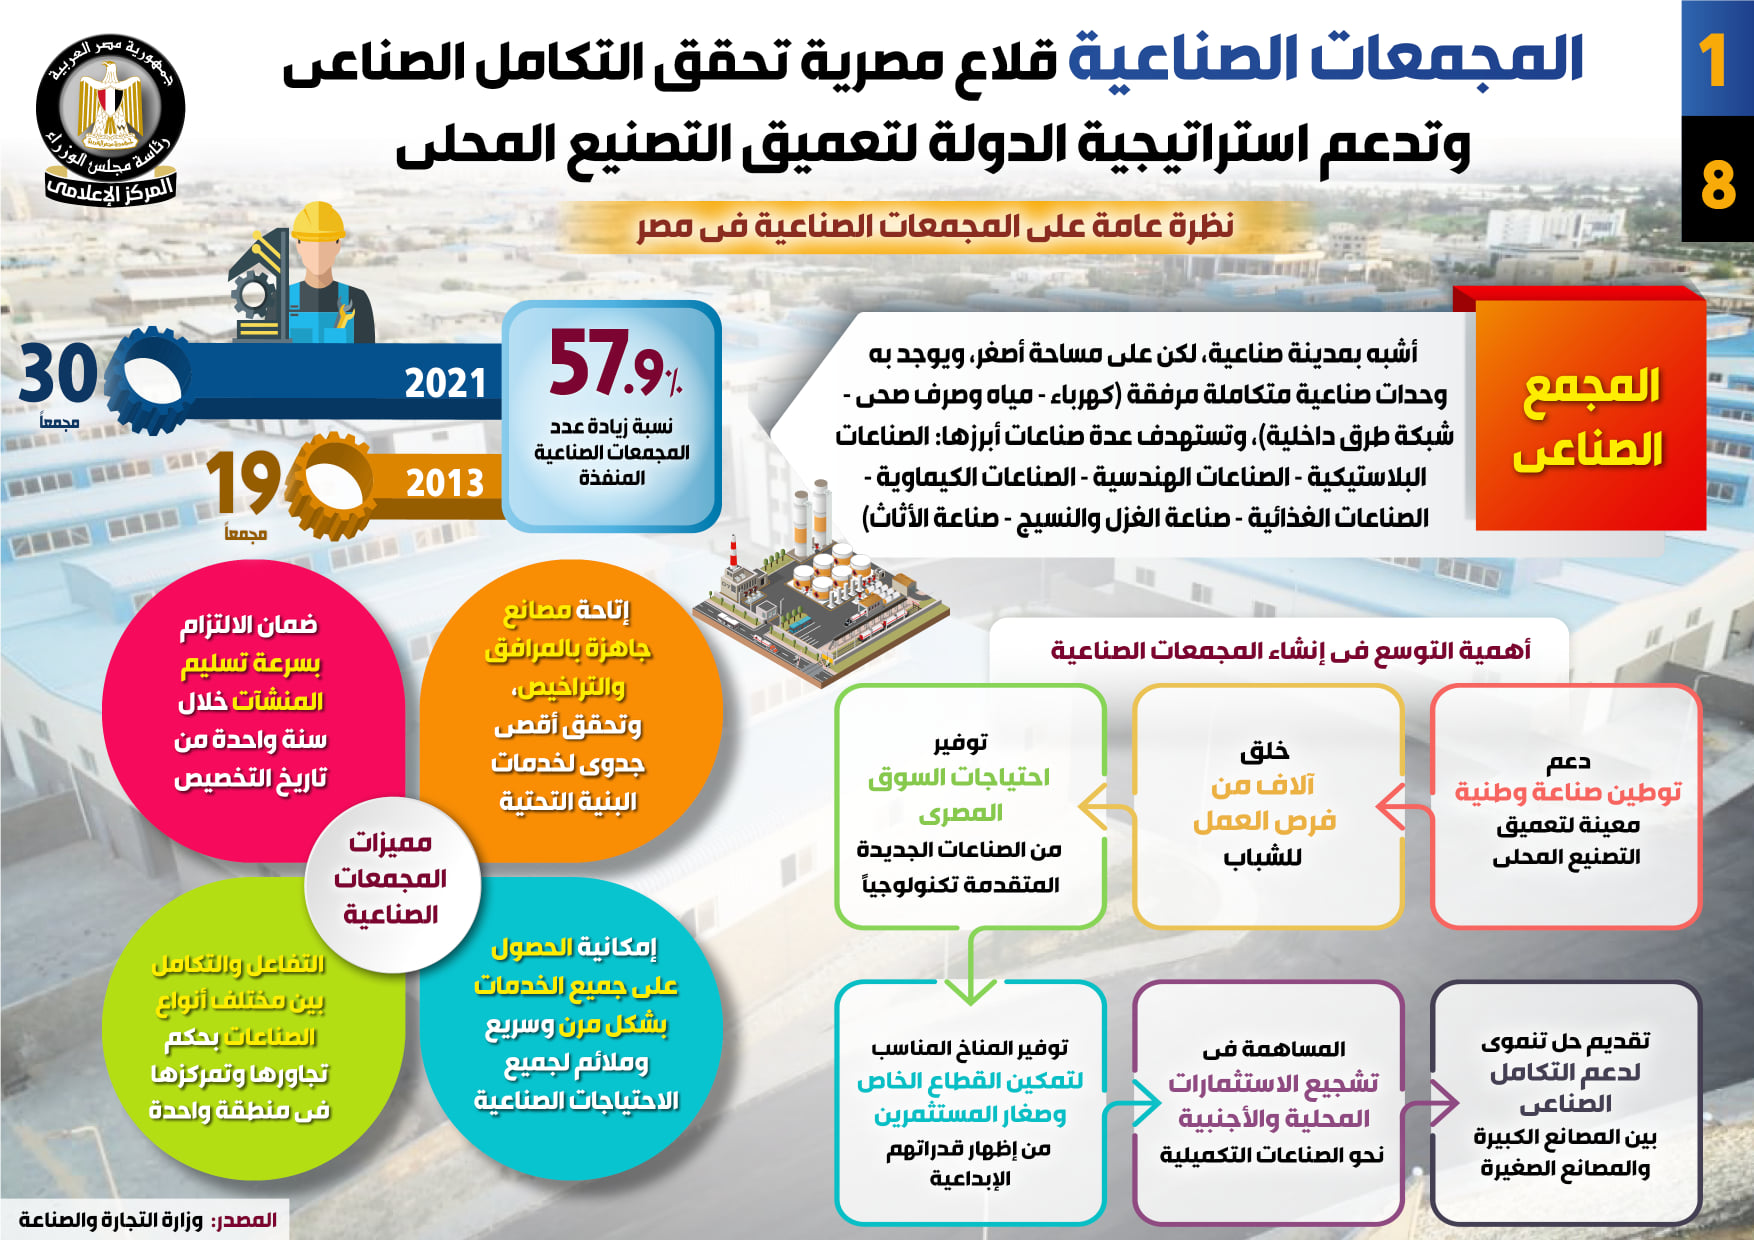 «المجمعات الصناعية» قلاع مصرية تدعم استراتيجية الدولة لتعميق التصنيع المحلي